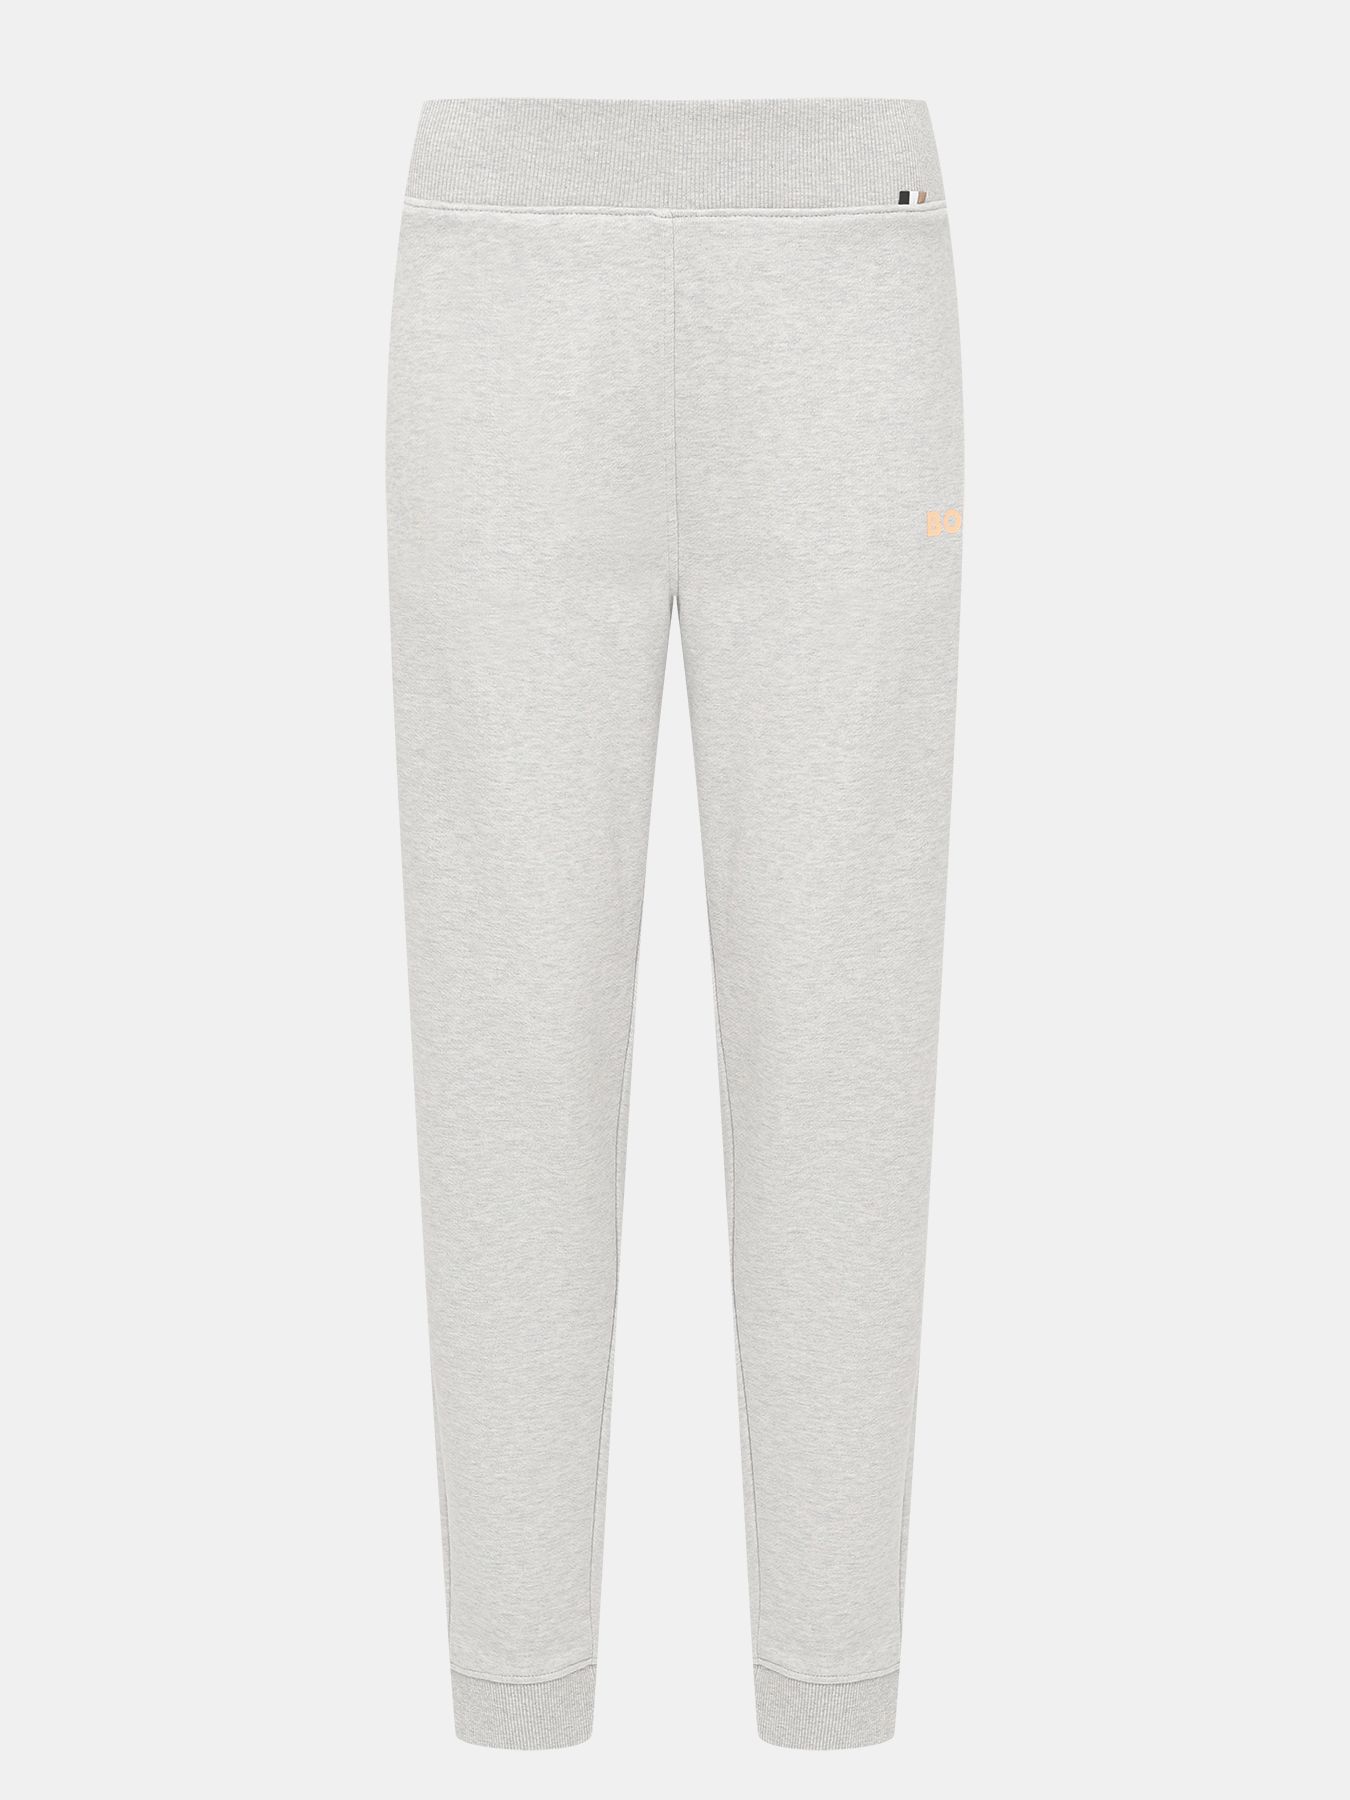 Спортивные брюки Ejoy BOSS 424173-041, цвет серый, размер 40-42 - фото 1